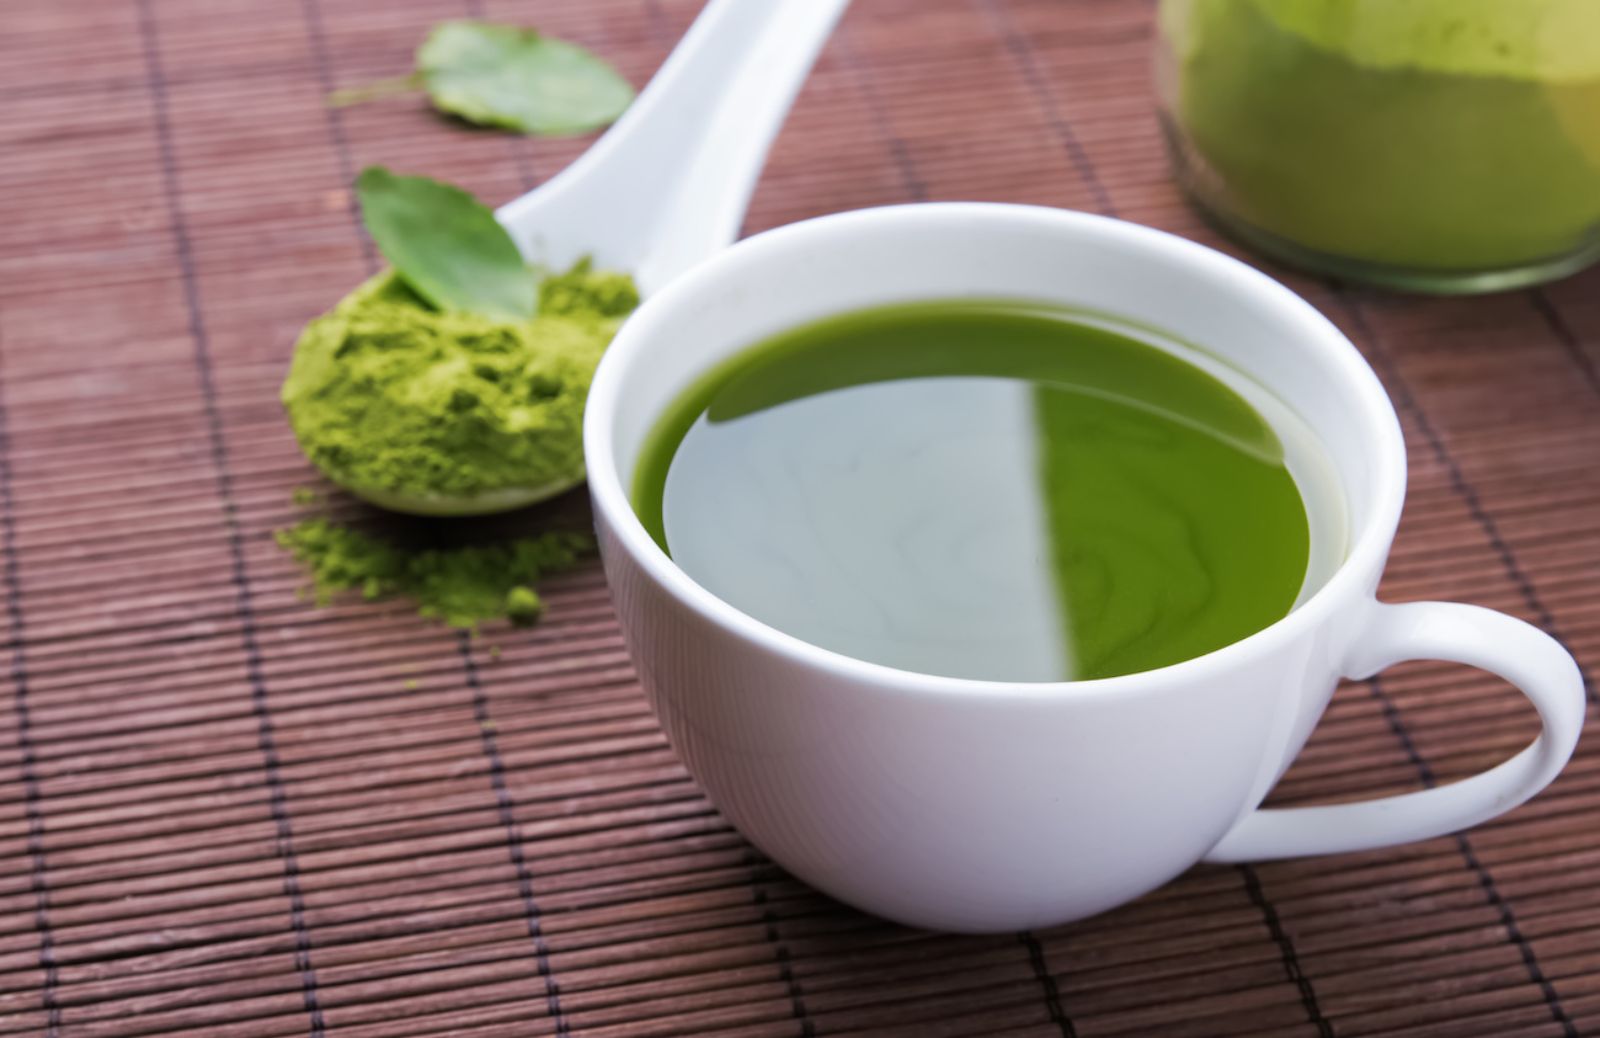 Come proteggere la salute con i benefici del tè verde matcha giapponese